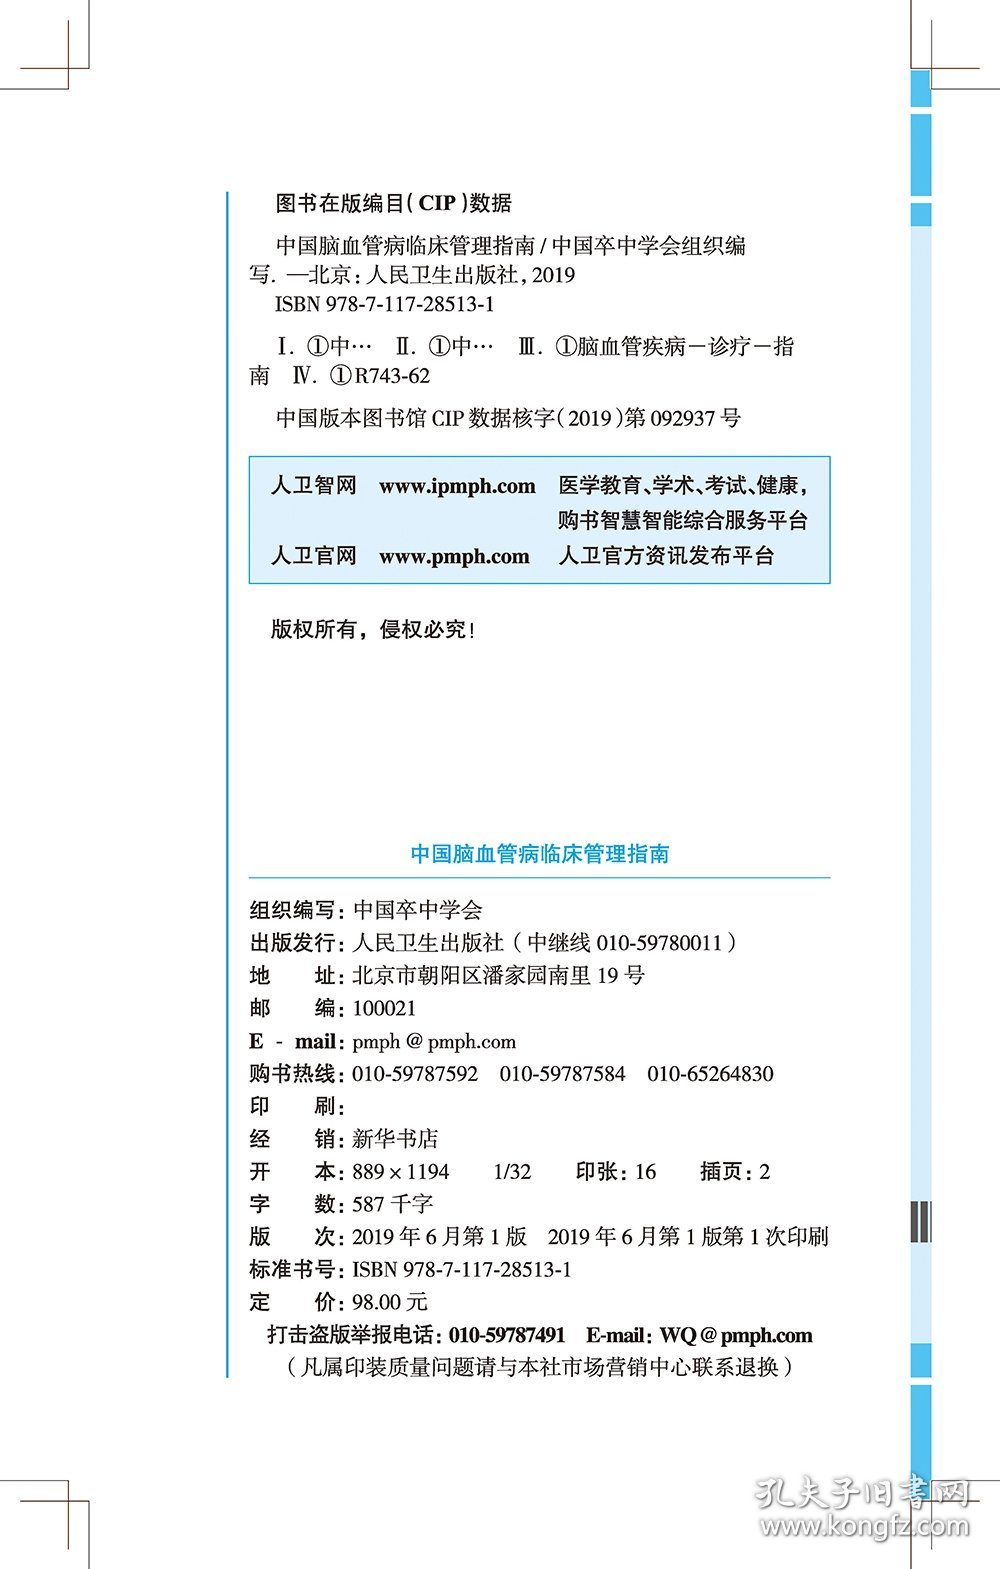 【正版新书】中国脑血管病临床管理指南